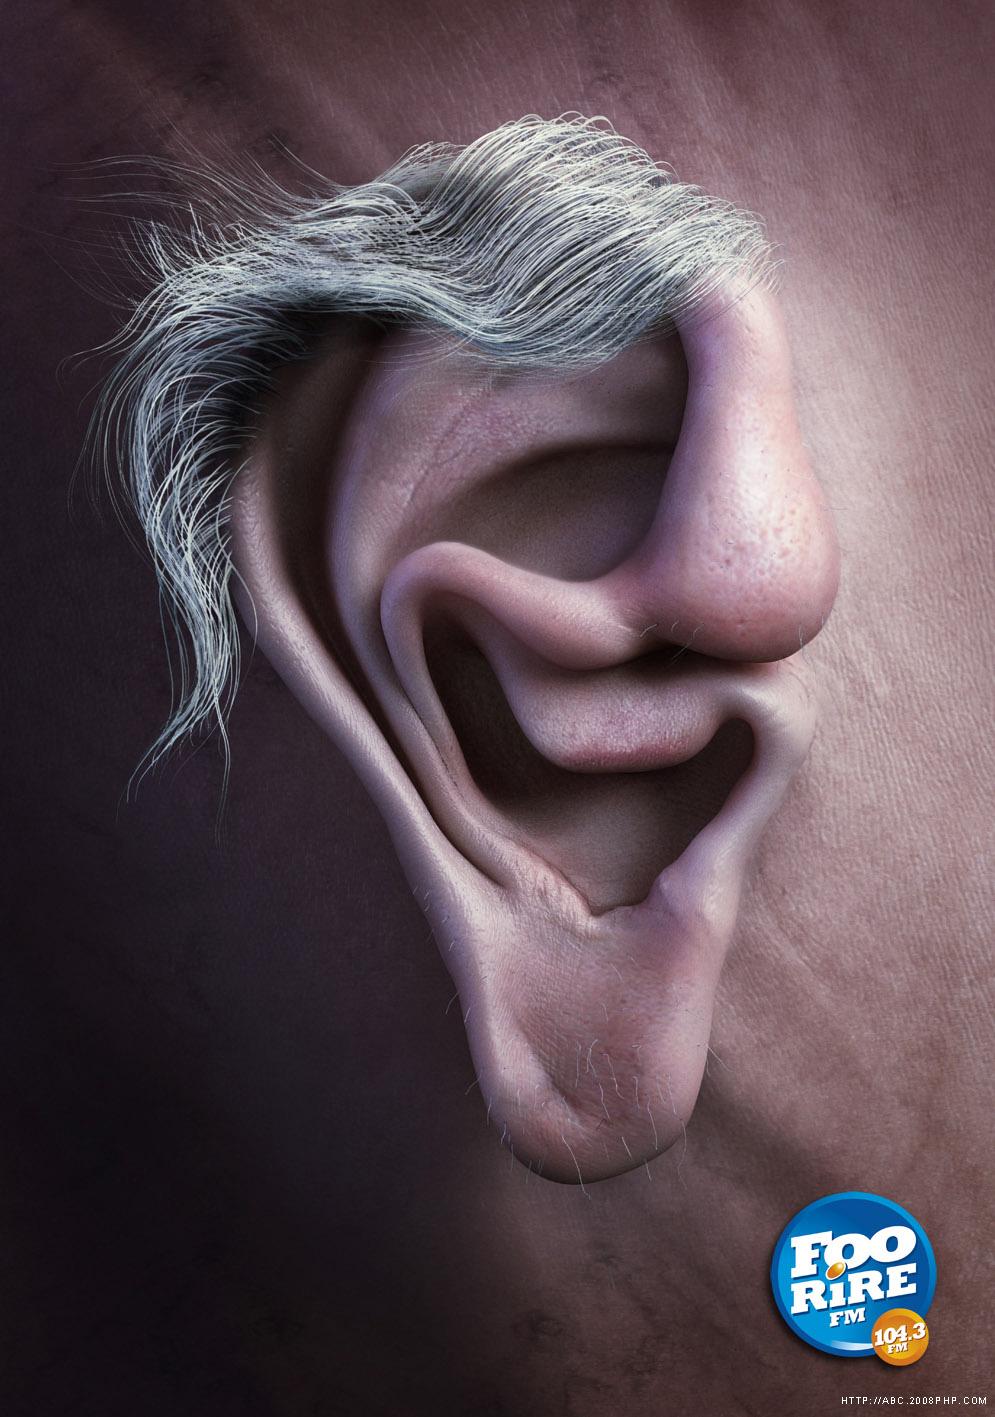 3fm创意广告 耳朵-欧莱凯设计网